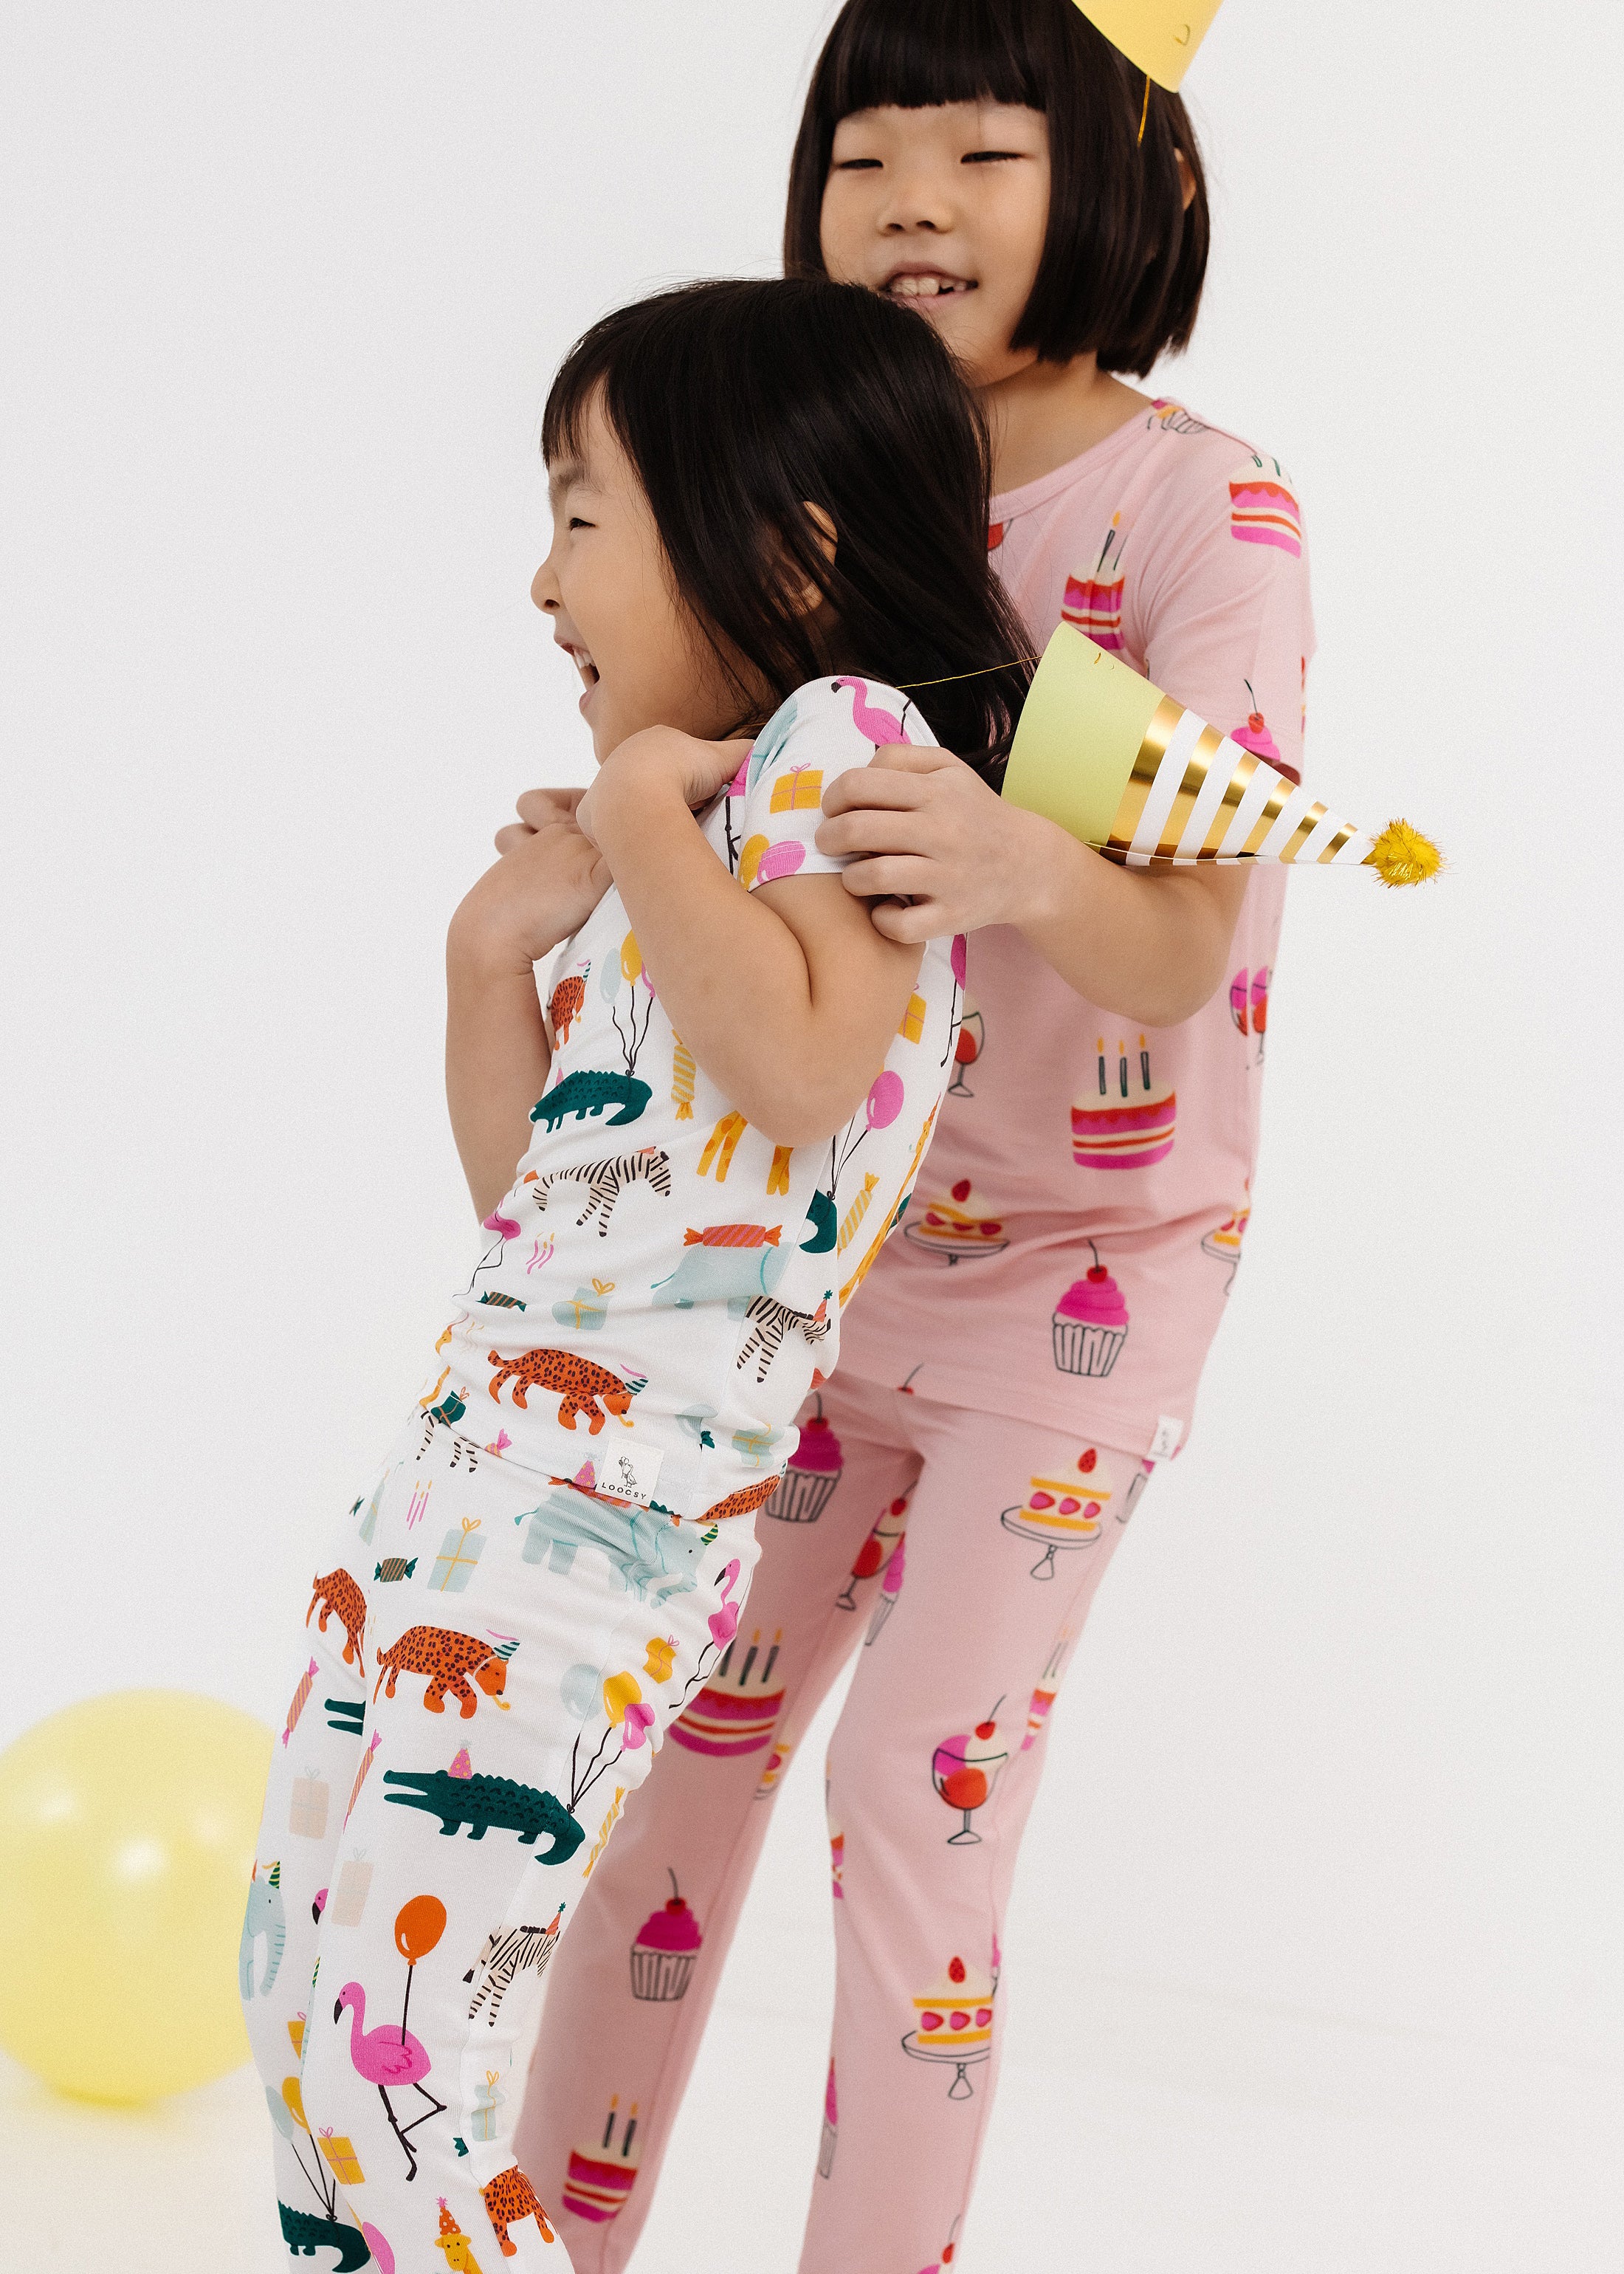 Party Animal Pajama Set